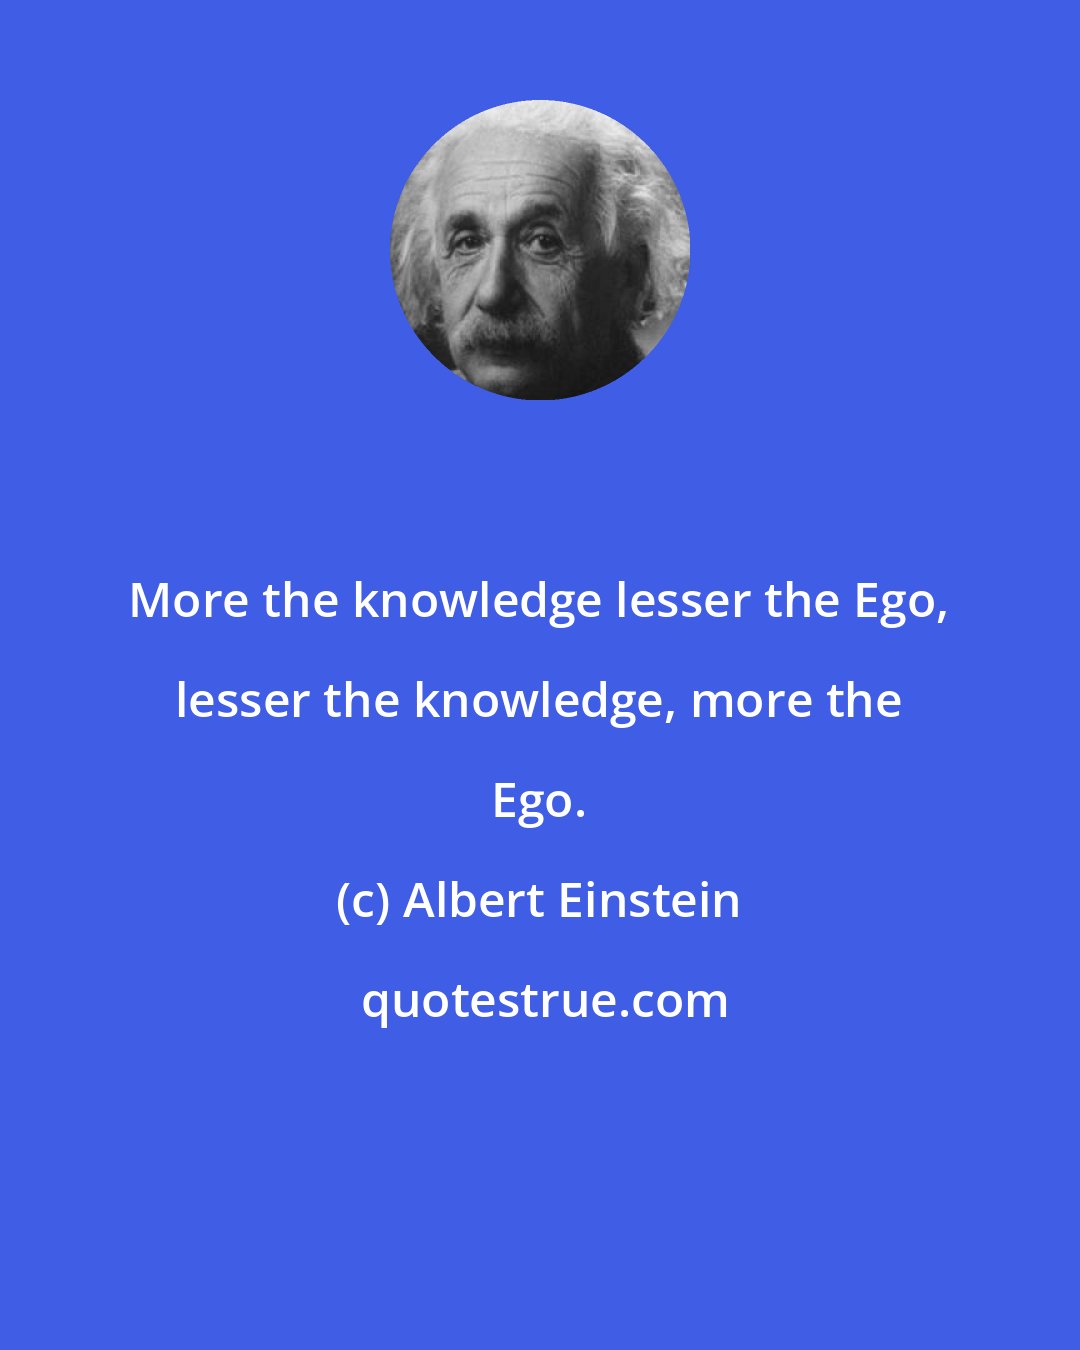 Albert Einstein: More the knowledge lesser the Ego, lesser the knowledge, more the Ego.